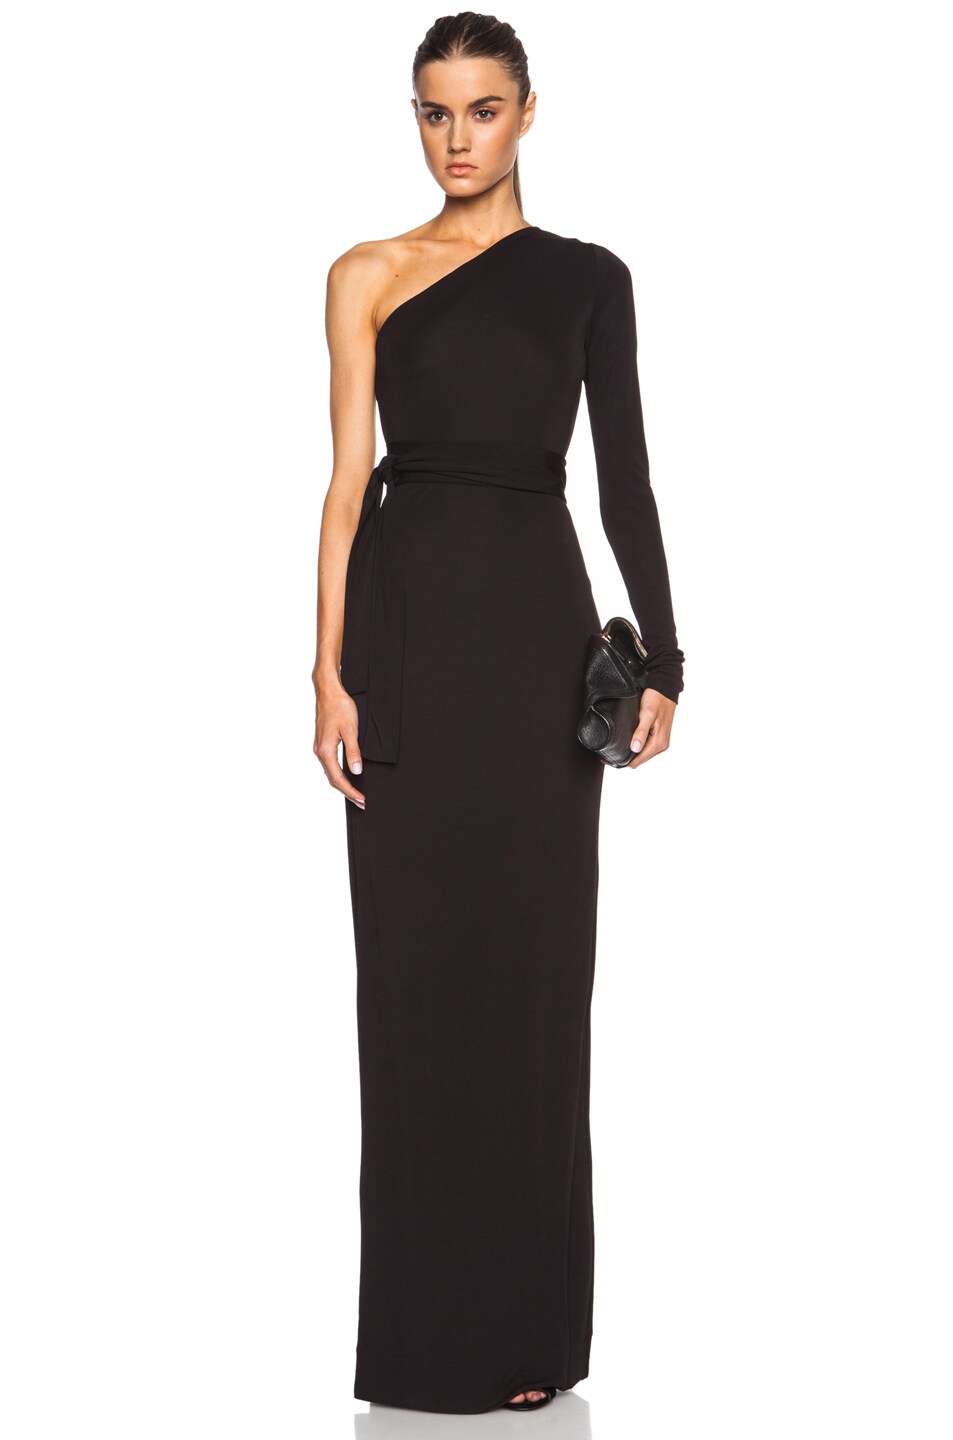 Diane von Furstenberg Coco One Shoulder Rayon Maxi Dress in Black | FWRD